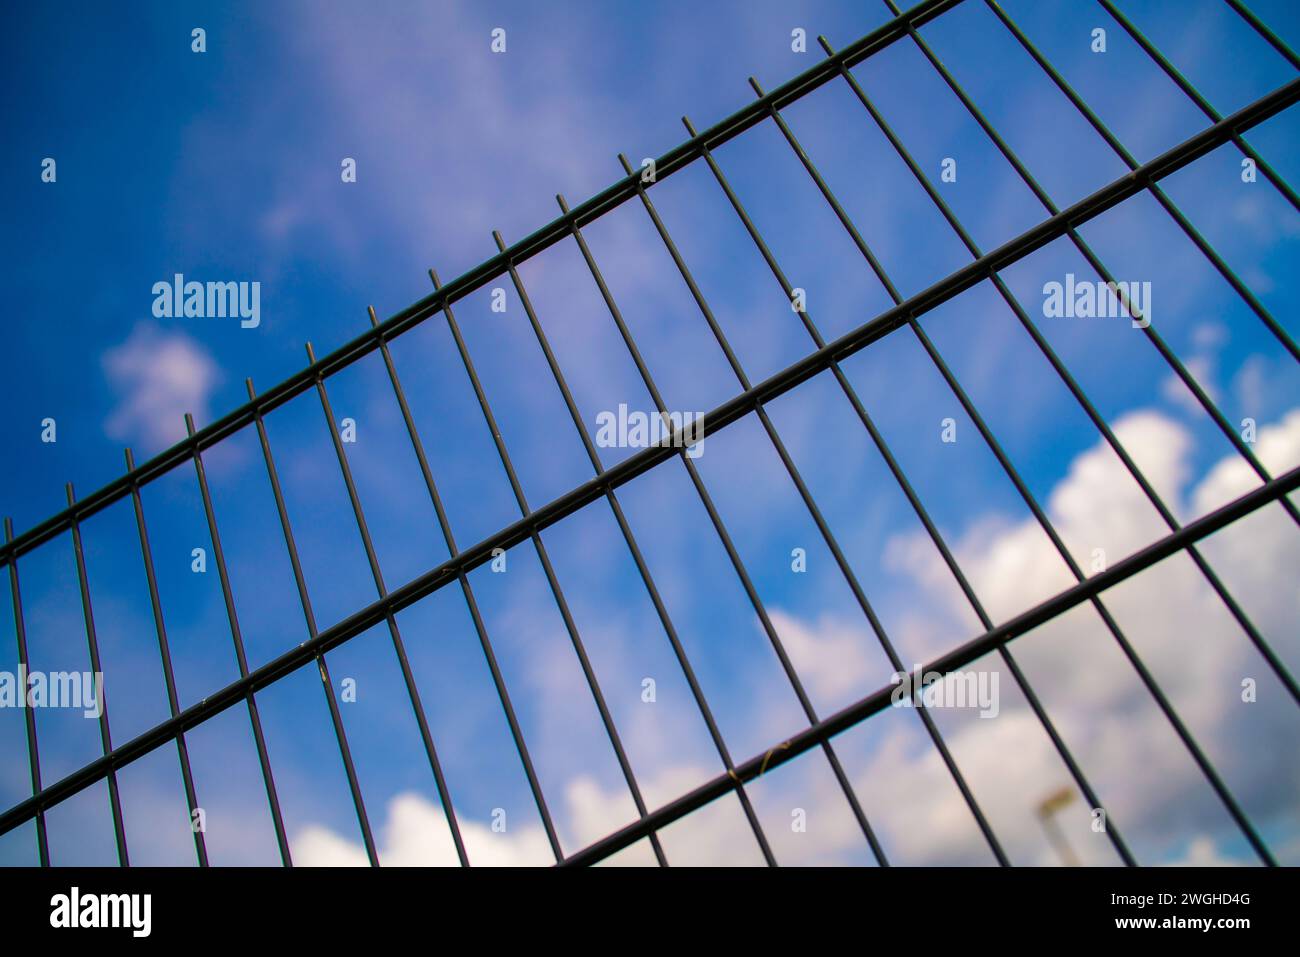 Ein Metallzaun mit blauem Himmel im Hintergrund. Der Zaun besteht aus Metall und der Himmel ist in einem klaren Blau. Das Bild deutet auf ein Gefühl von Offenheit hin Stockfoto